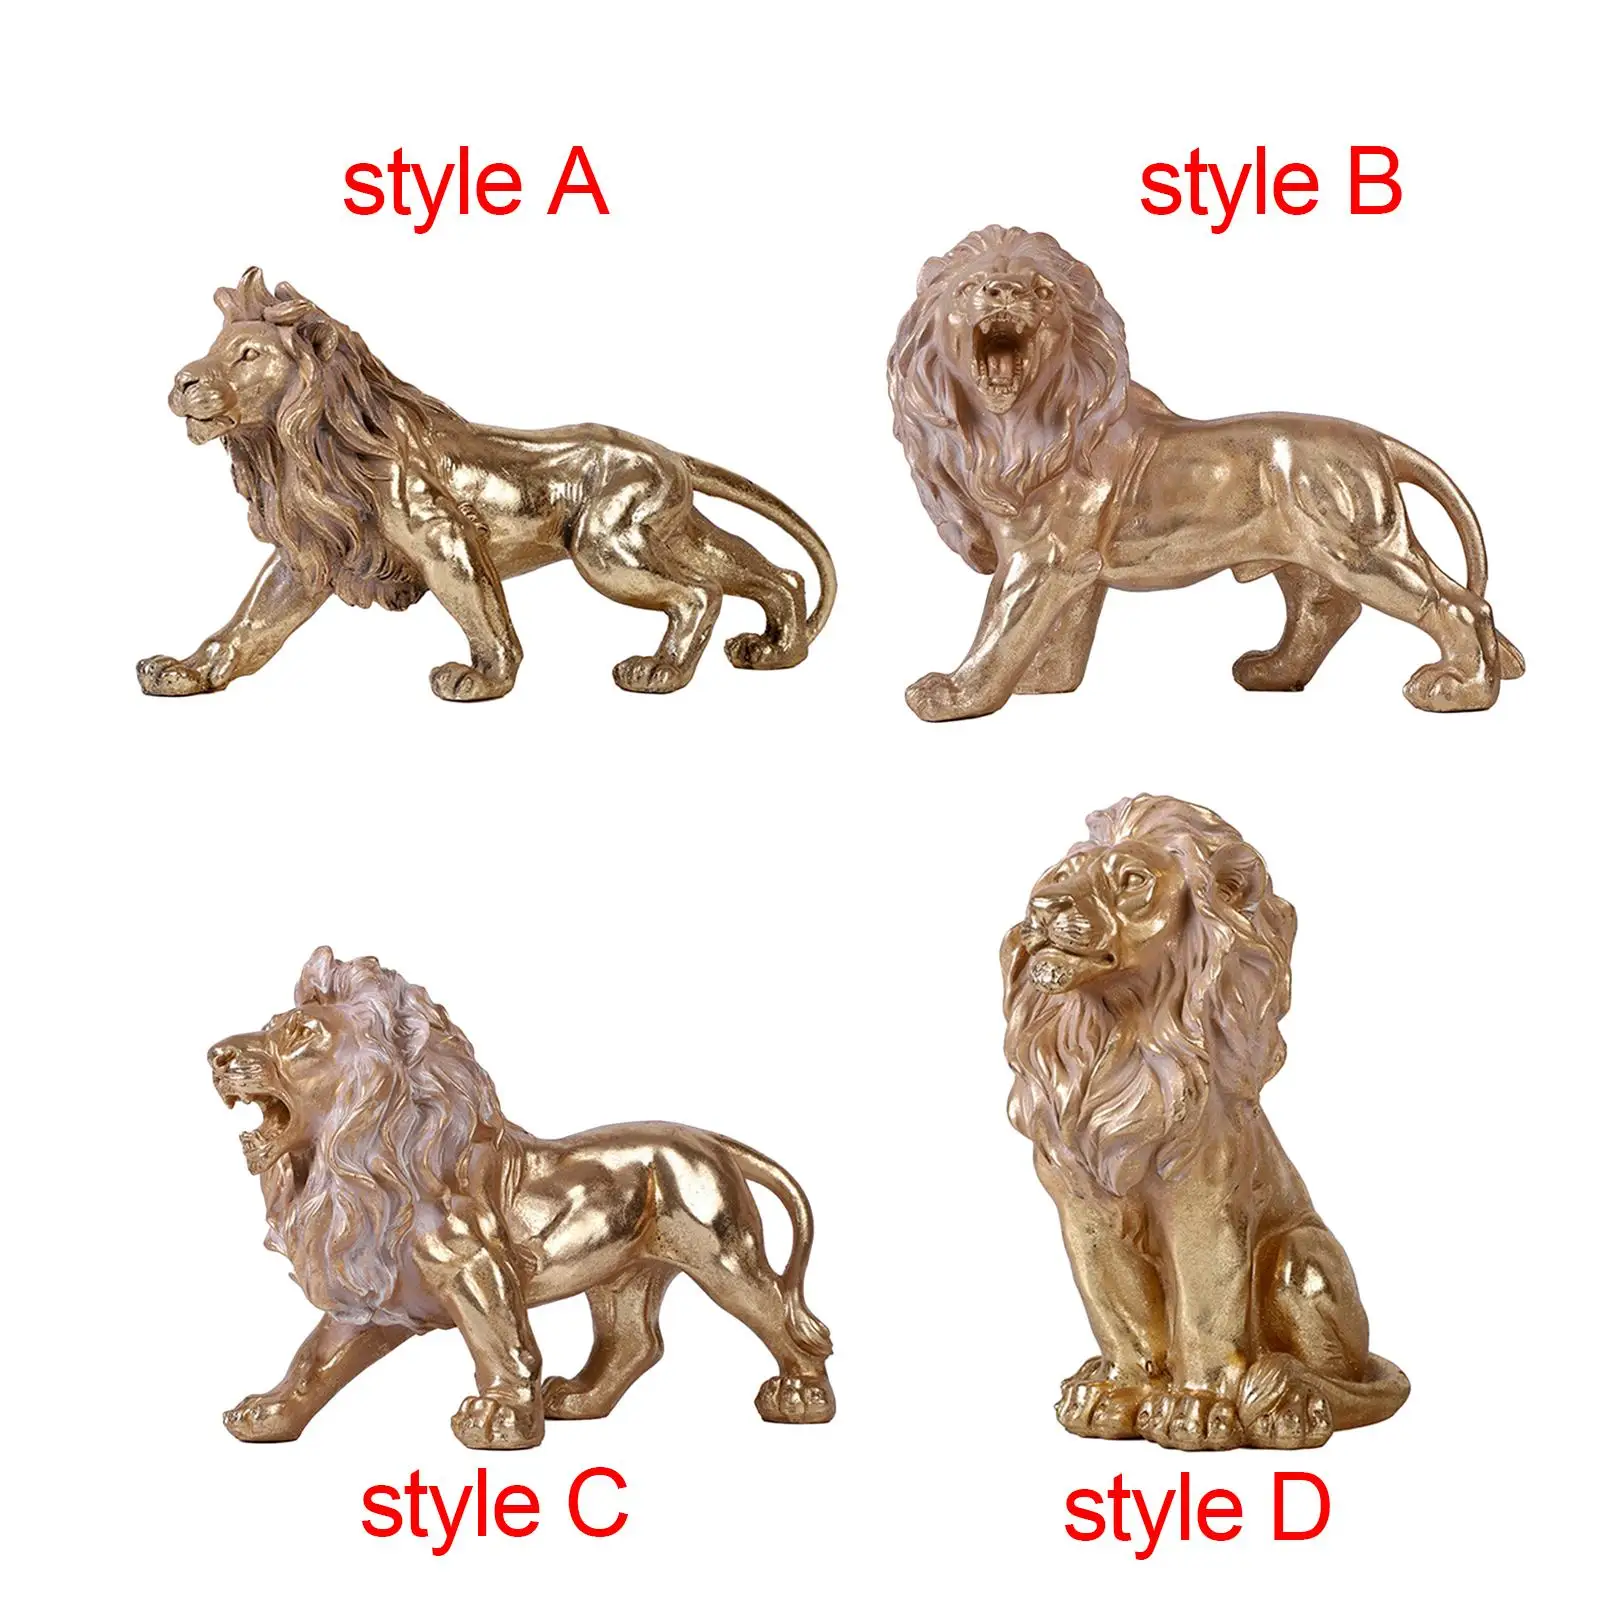 

Декоративная скульптура в виде льва, миниатюрная фигурка животного, Коллекционные Фигурки для настольного телефона